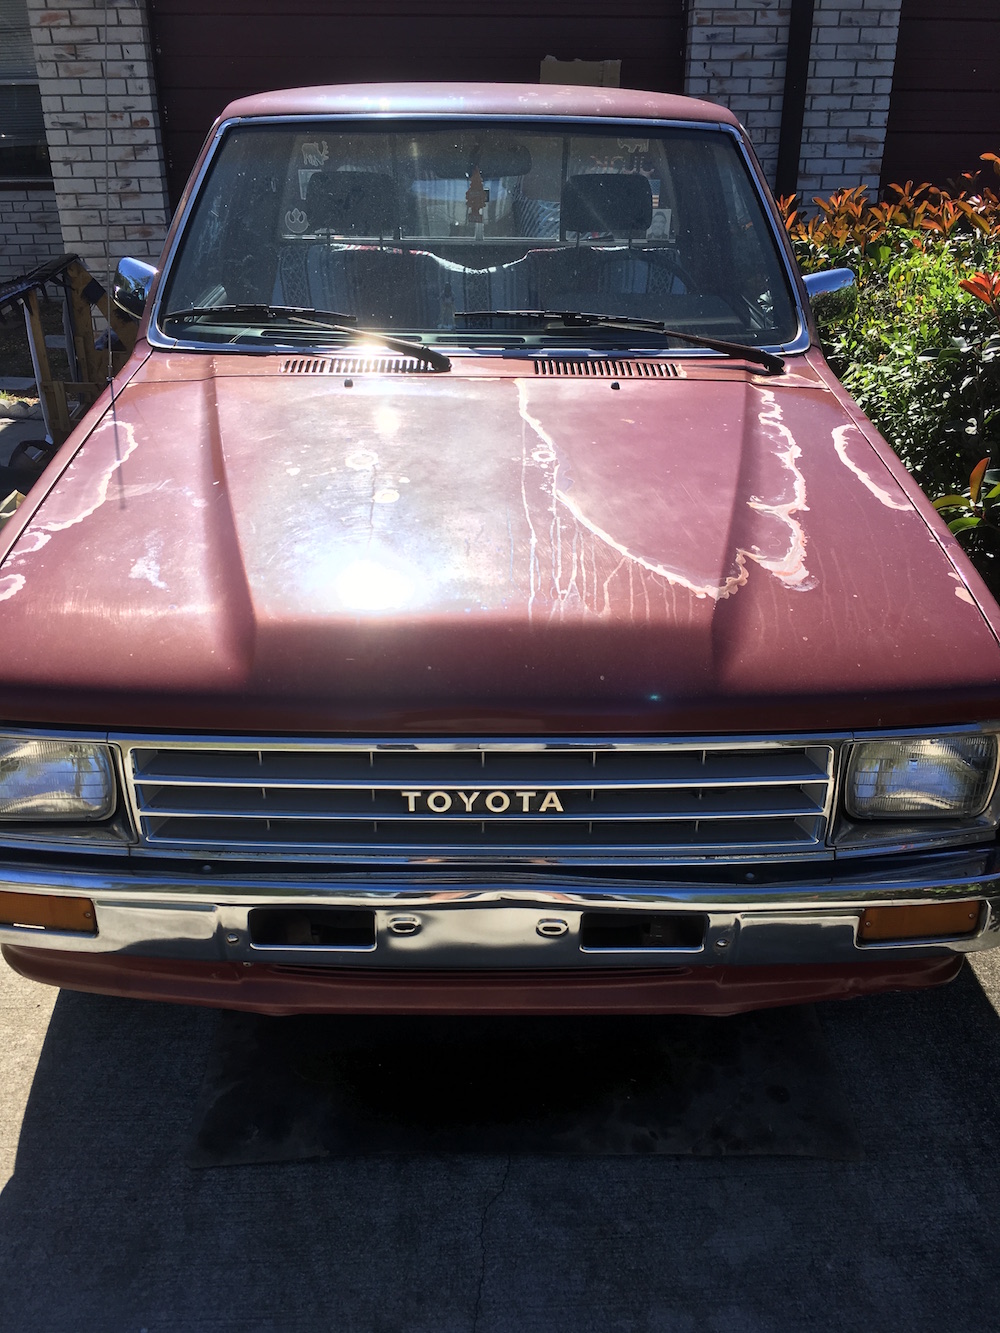 YOTATECH: My First Toyota, by Tyler Linn